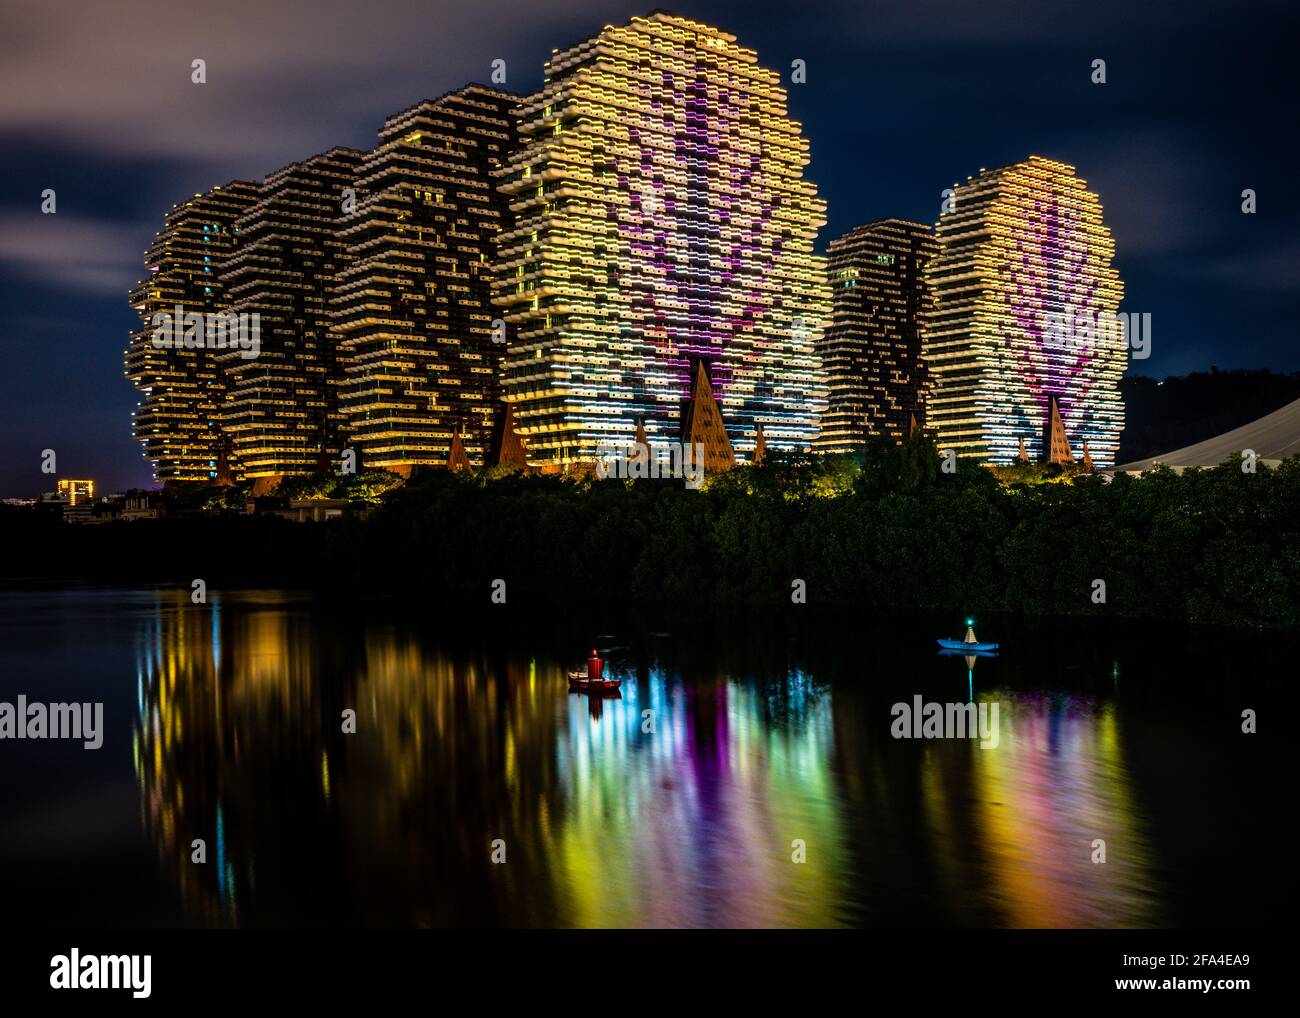 Sanya China , 25 mars 2021 : belle vue de la beauté Crown Grand Tree Hotel bâtiments colorés aka Lego Trees Hotel illuminé la nuit avec de l'eau Banque D'Images